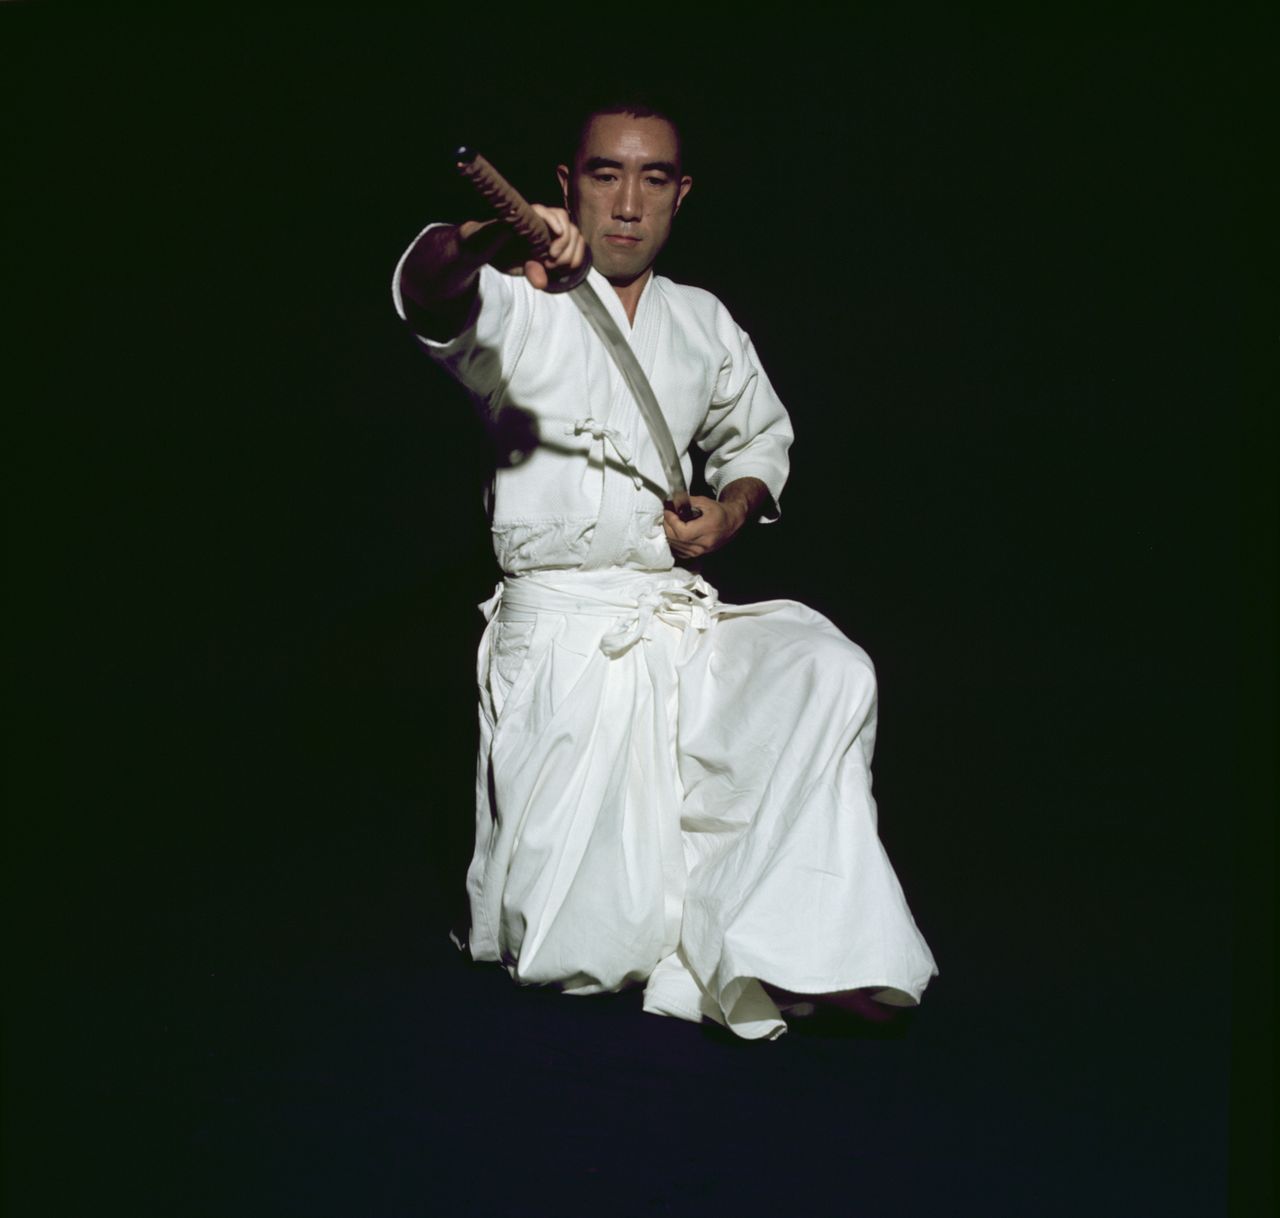    ميشيما يوكيو وهو يبذل جهده في التدريب على فن استلال السيف. التصوير بتاريخ 3/7/1970 (جيجي برس)